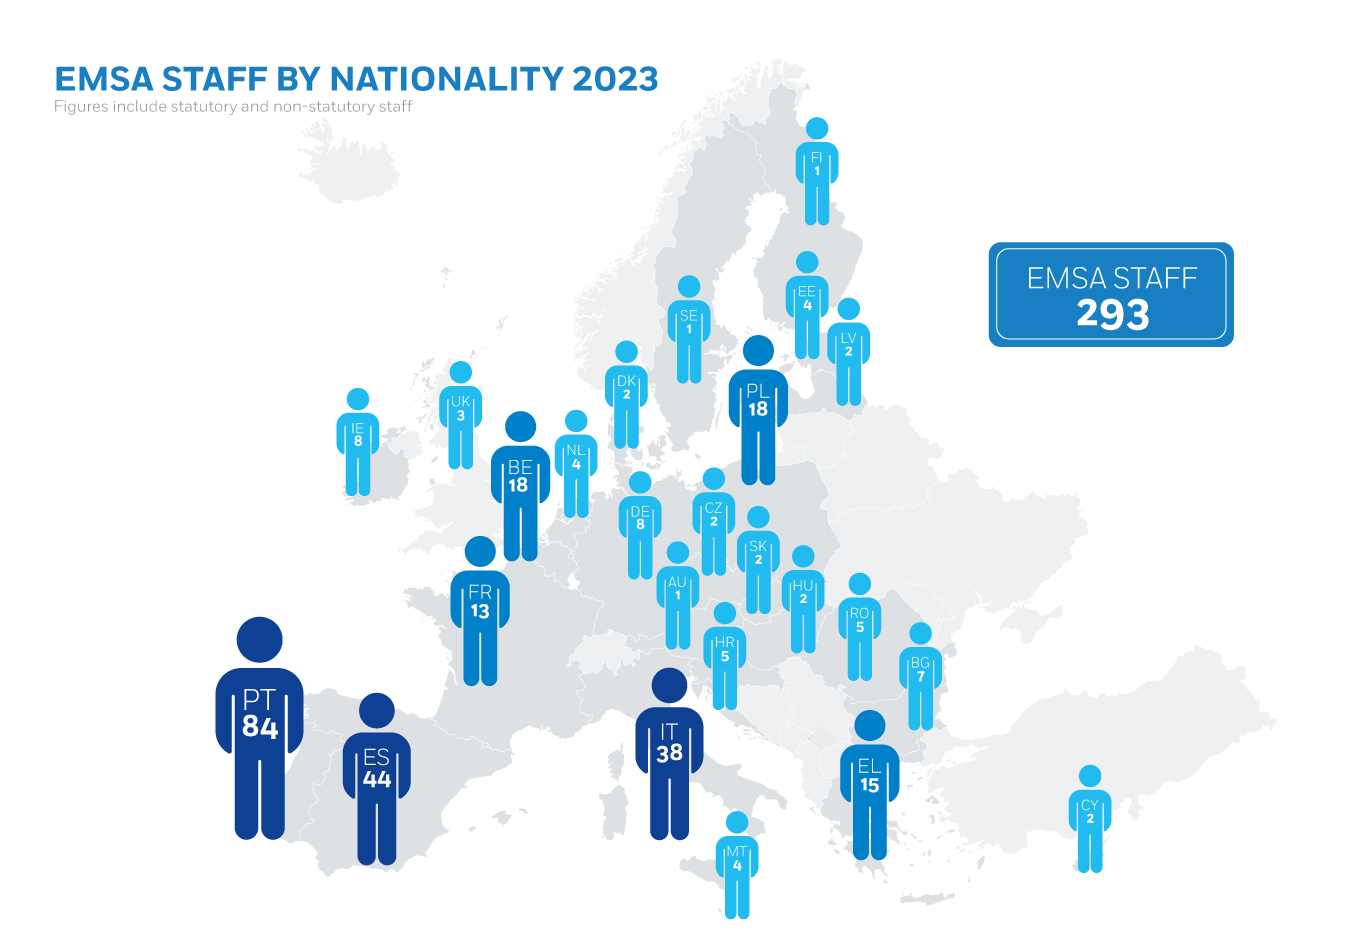 EMSA Staff by Nationality 2023 Image 1